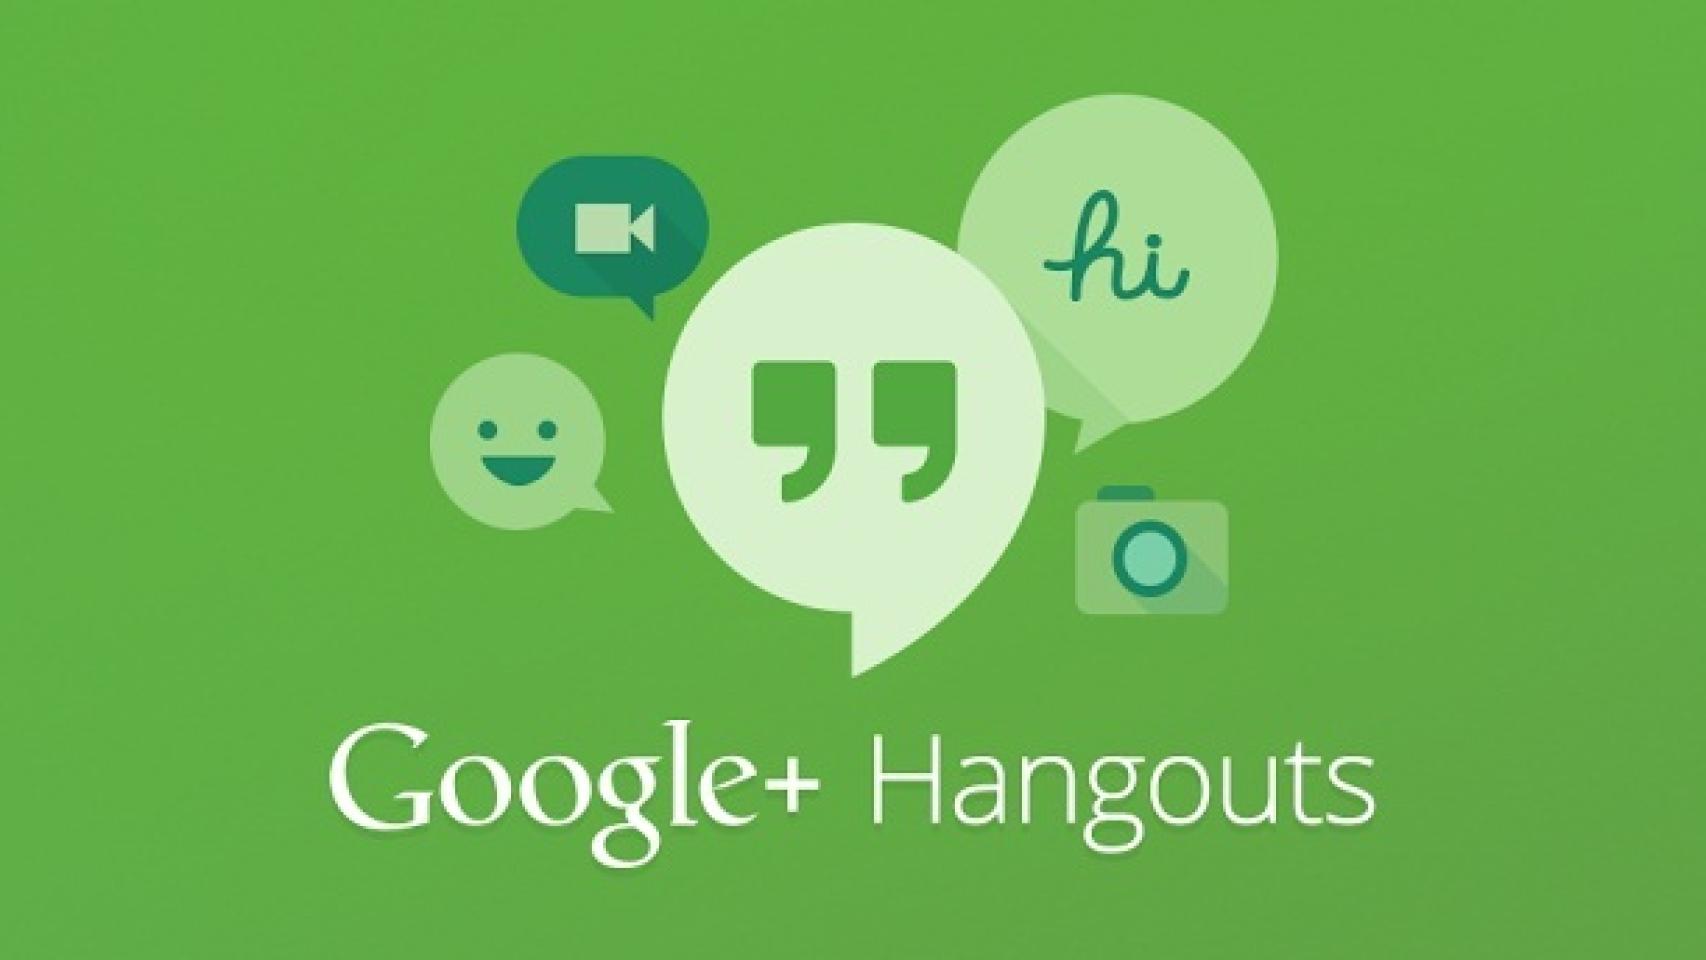 Google sabe que Hangouts provoca un excesivo gasto de batería, promete solucionarlo pronto